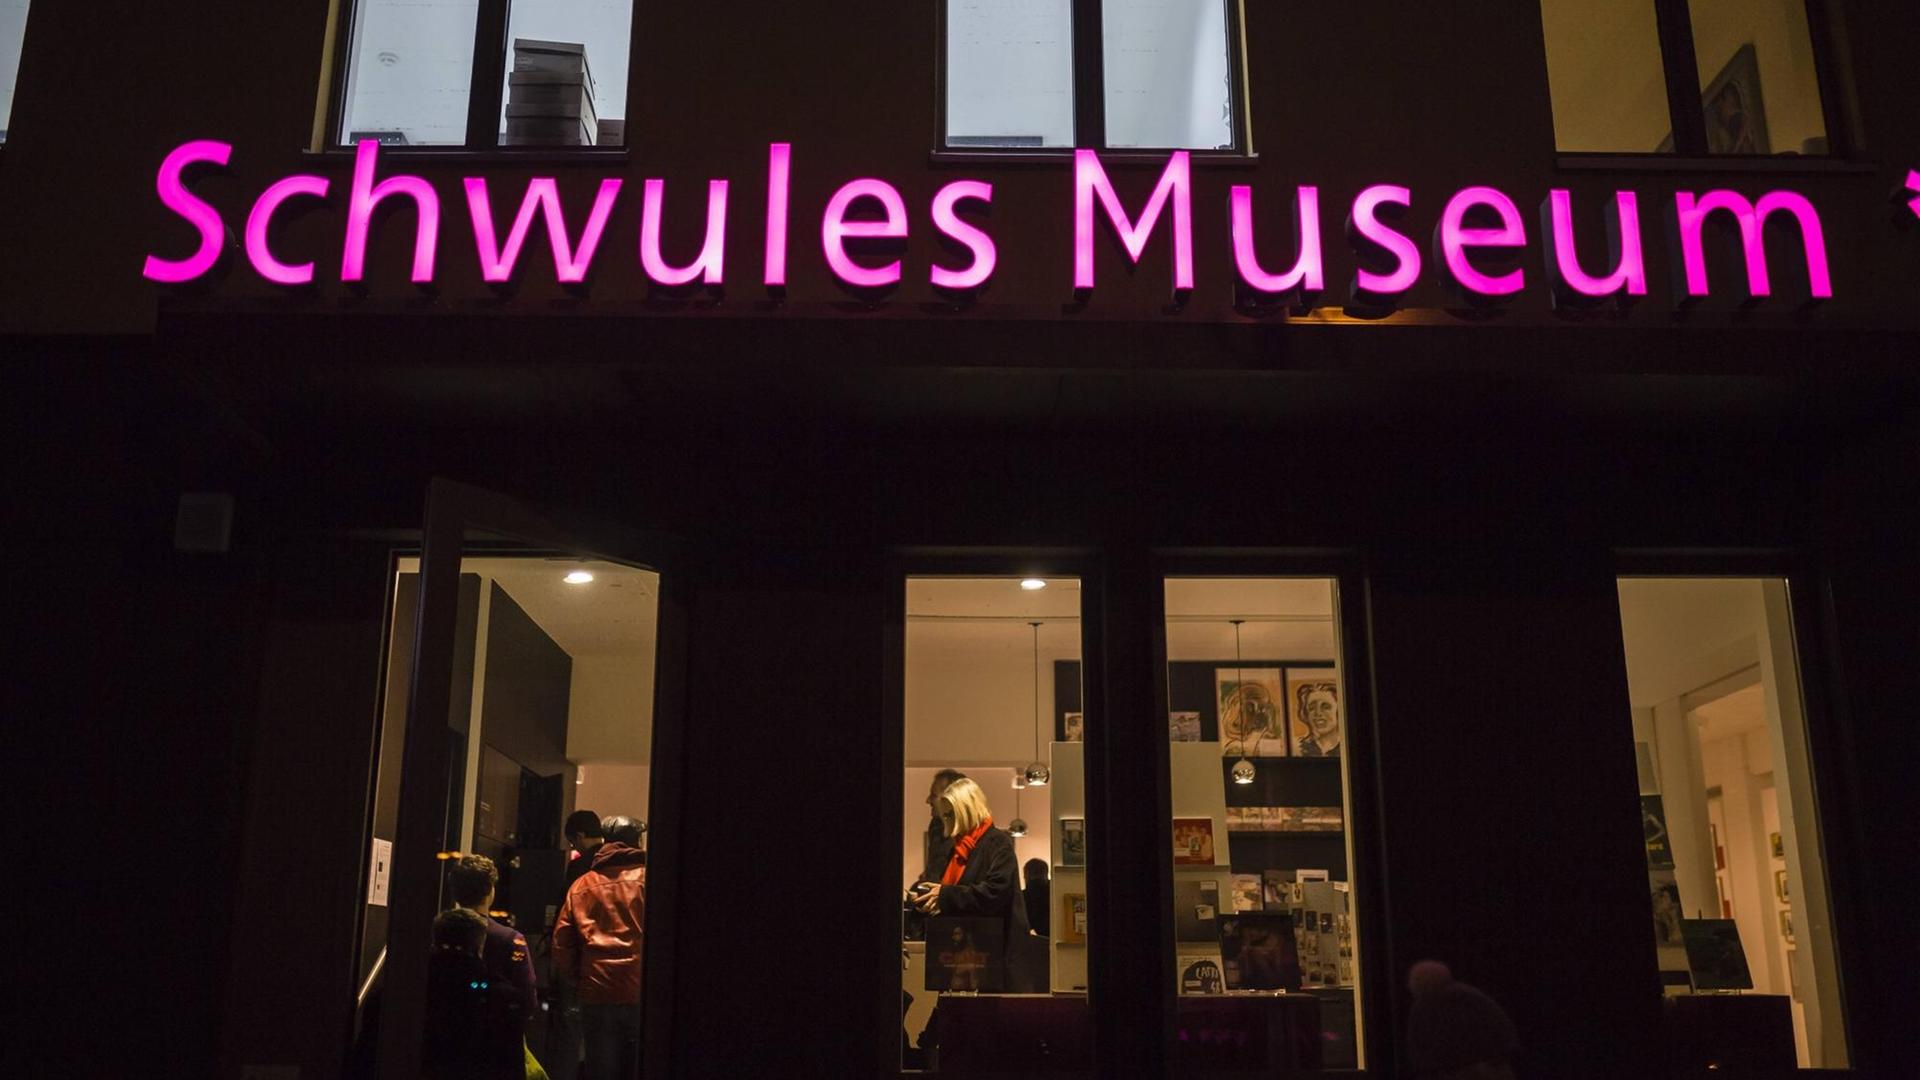 Leuchtend pinker Schriftzug "Schwules Museum" an einer Hauswand.